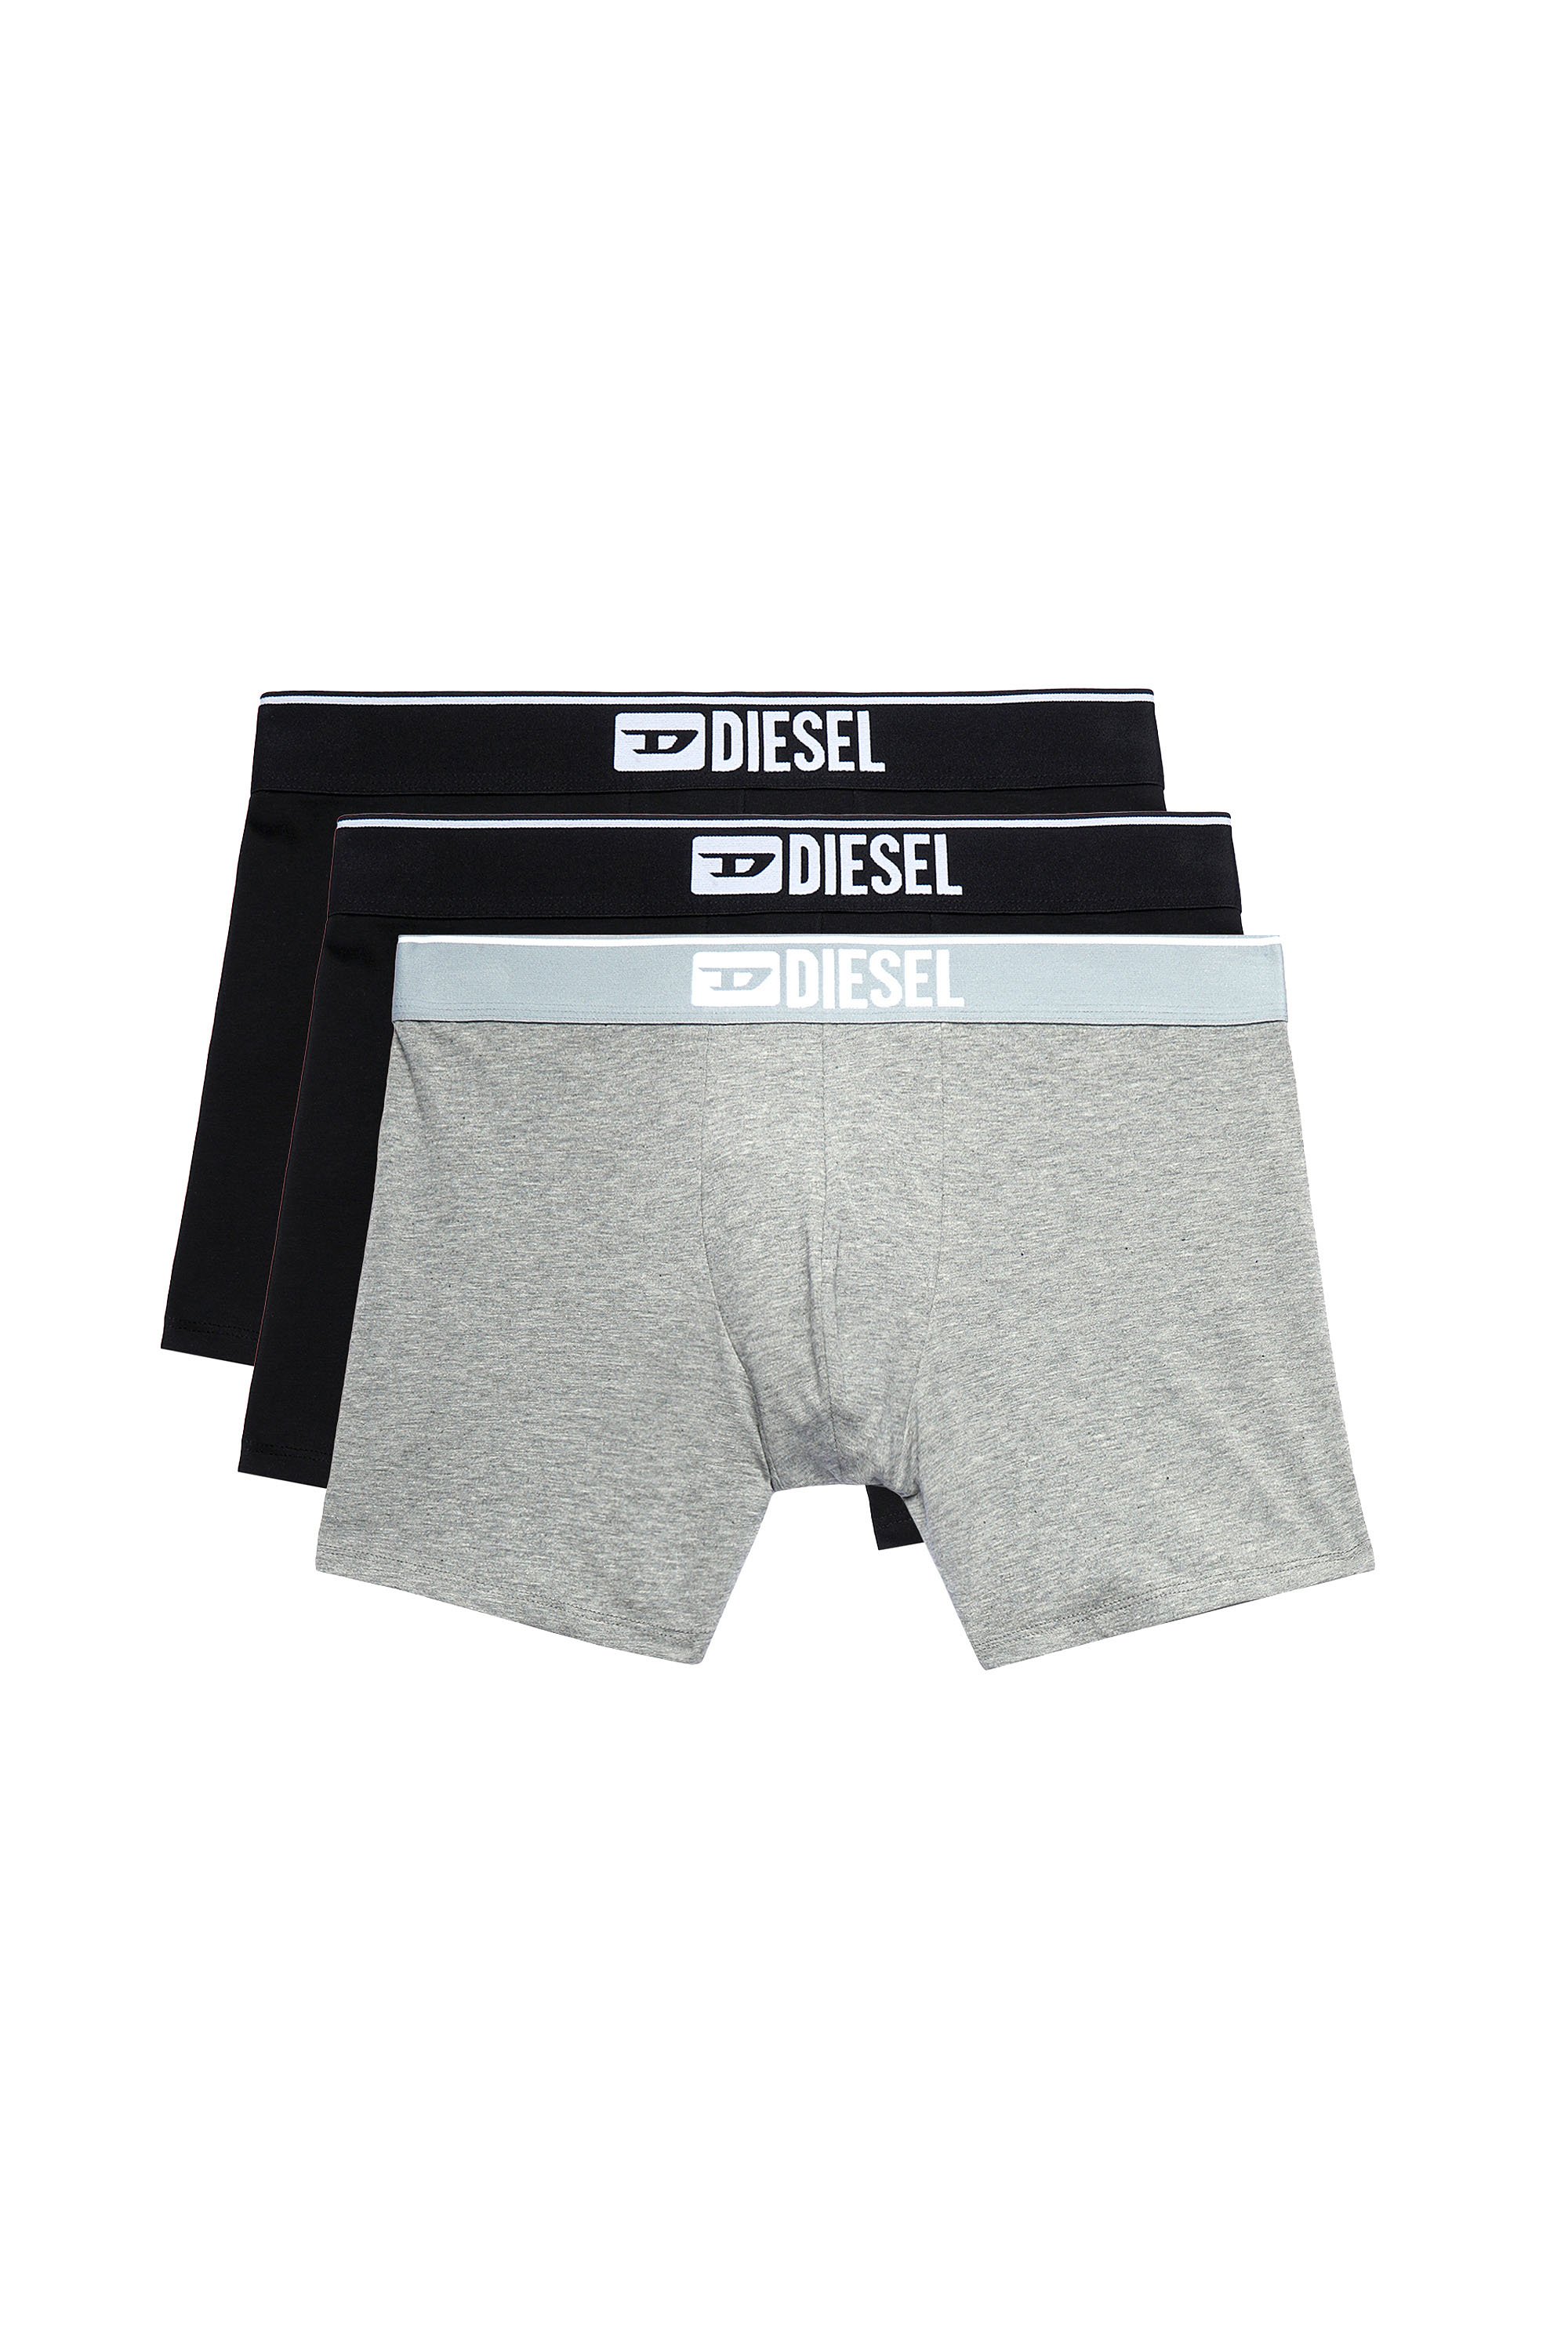 Everlast Men's 3-Pack Boxers - Black/Grey/White